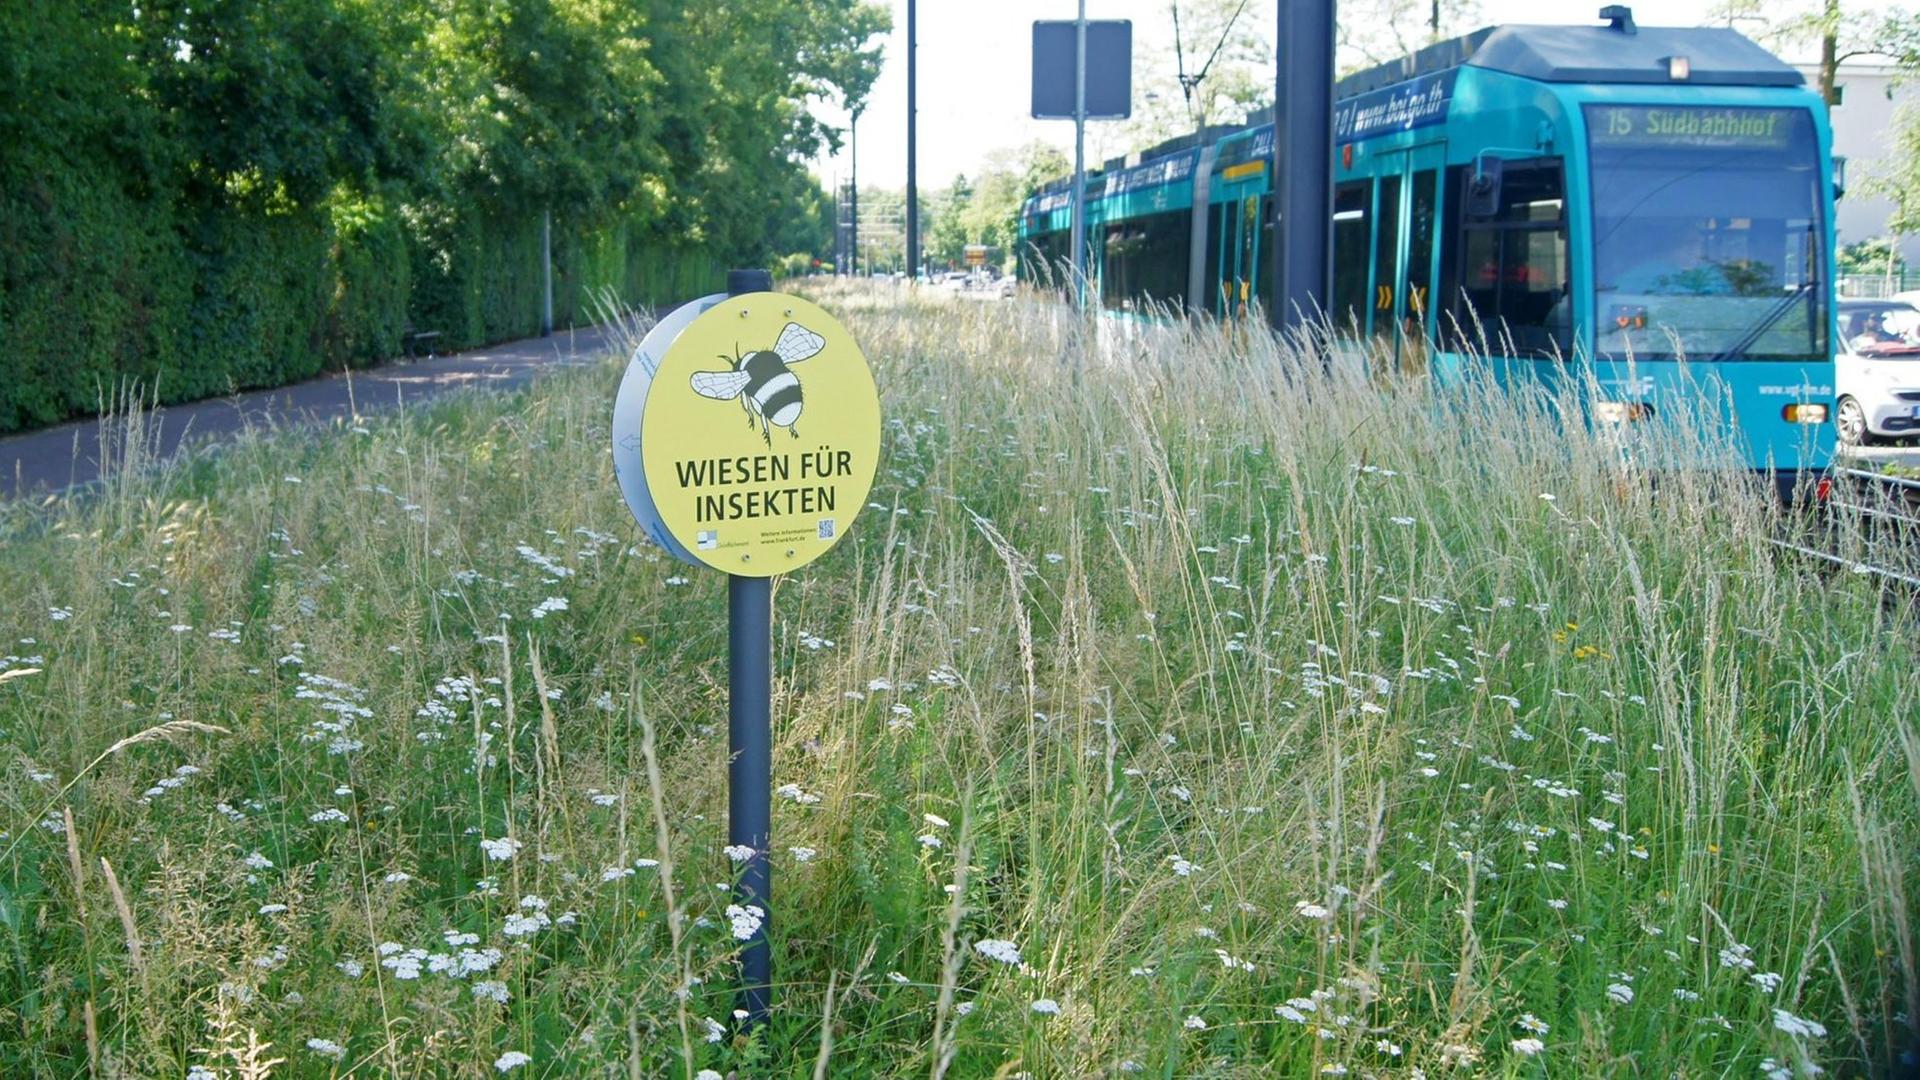 An vielen Grünanlagen oder Grünstreifen im Stadtgebiet und in den Randzonen von Frankfurt am Main stehen Hinweisschilder: Wiesen für Insekten. Eine Kampange des Grünflächenamtes der Stadt Frankfurt gegen kurzgemähtes Einheitsgrün.